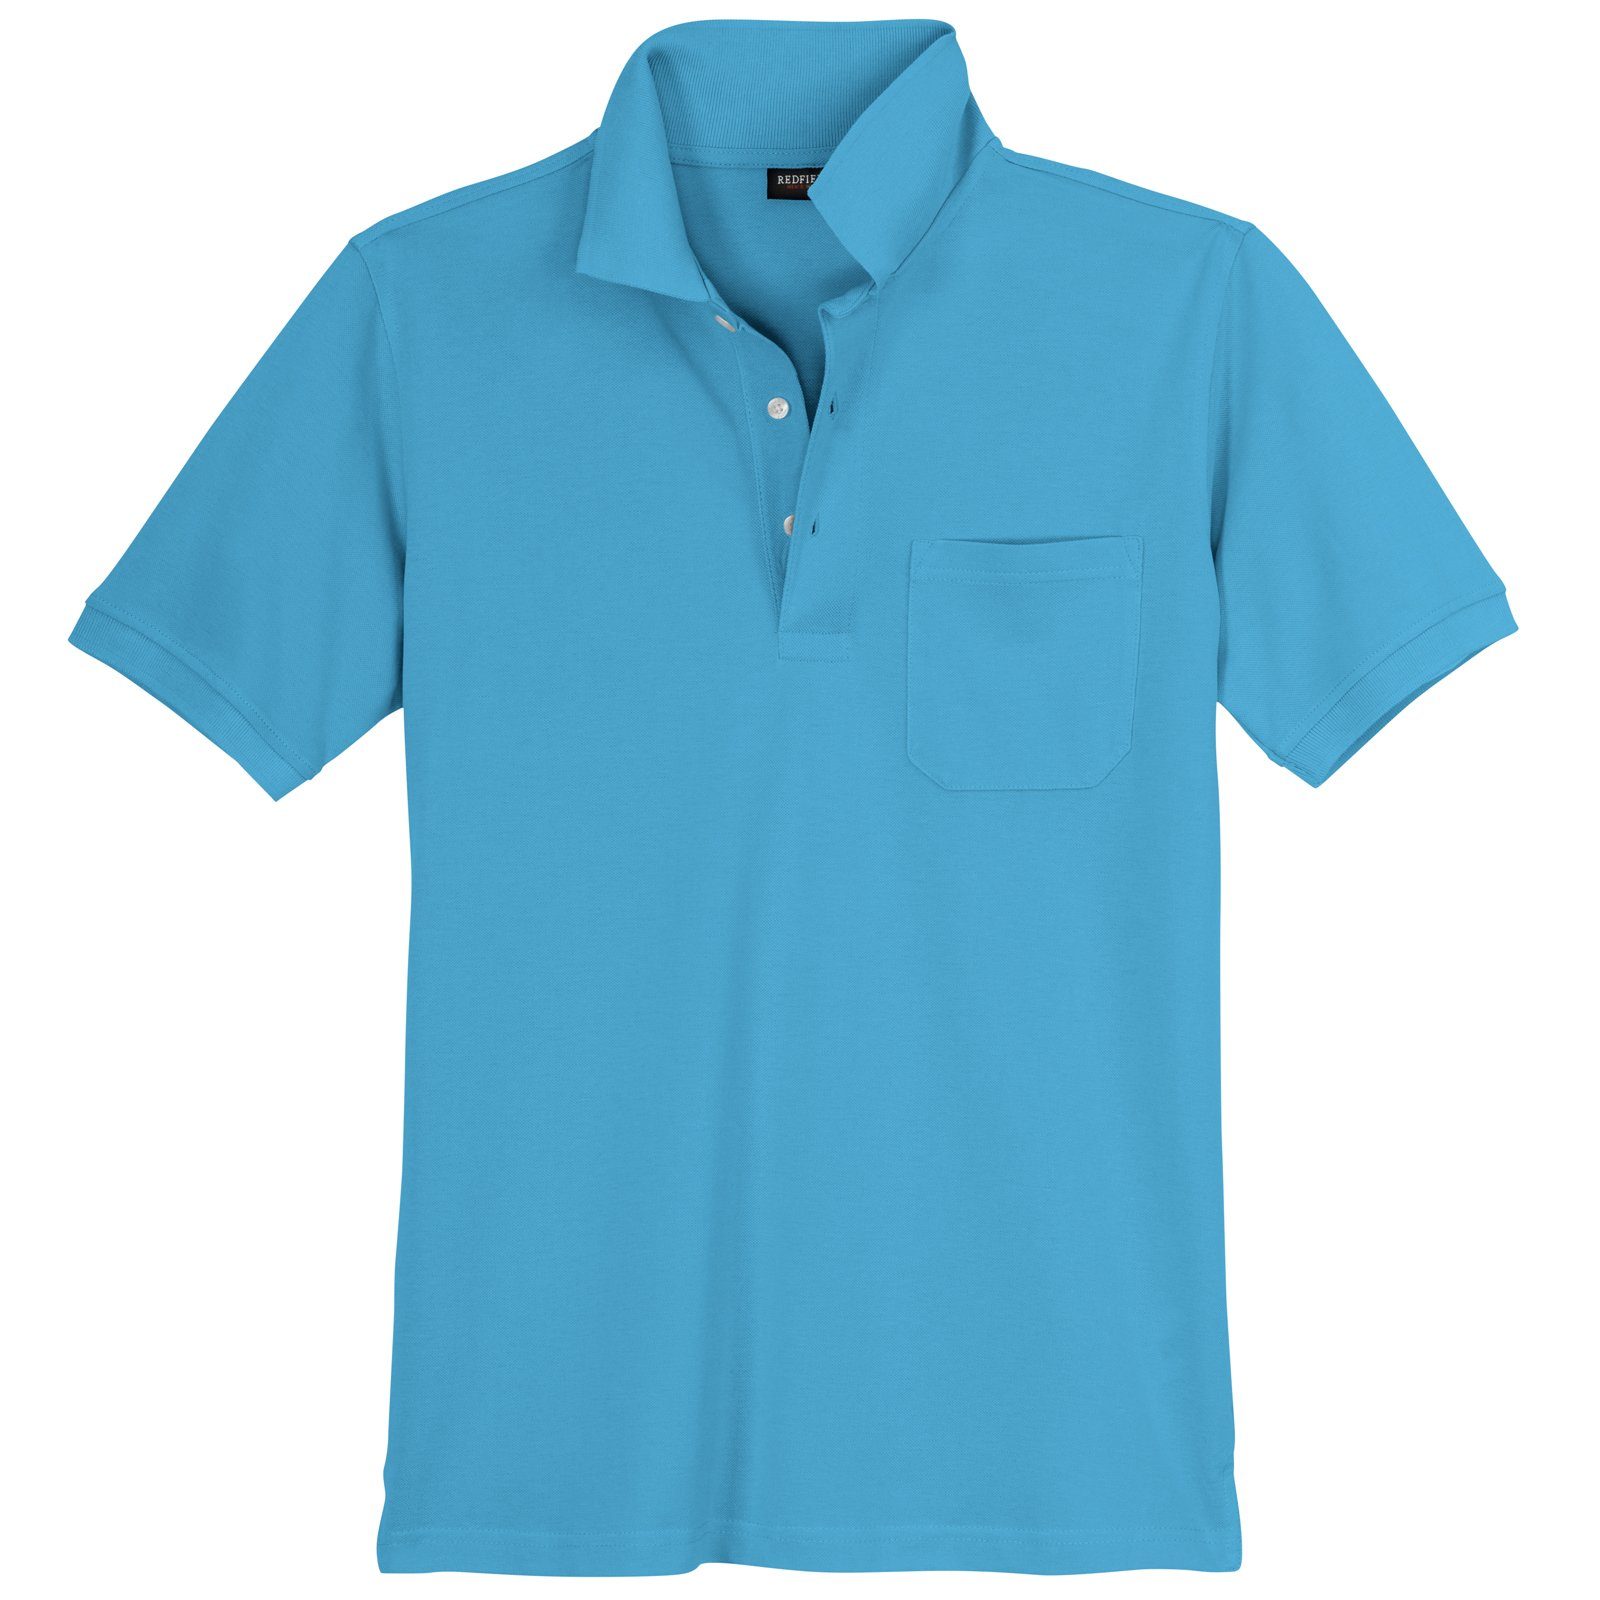 Größen Herren Große redfield Redfield azurblau Poloshirt Poloshirt